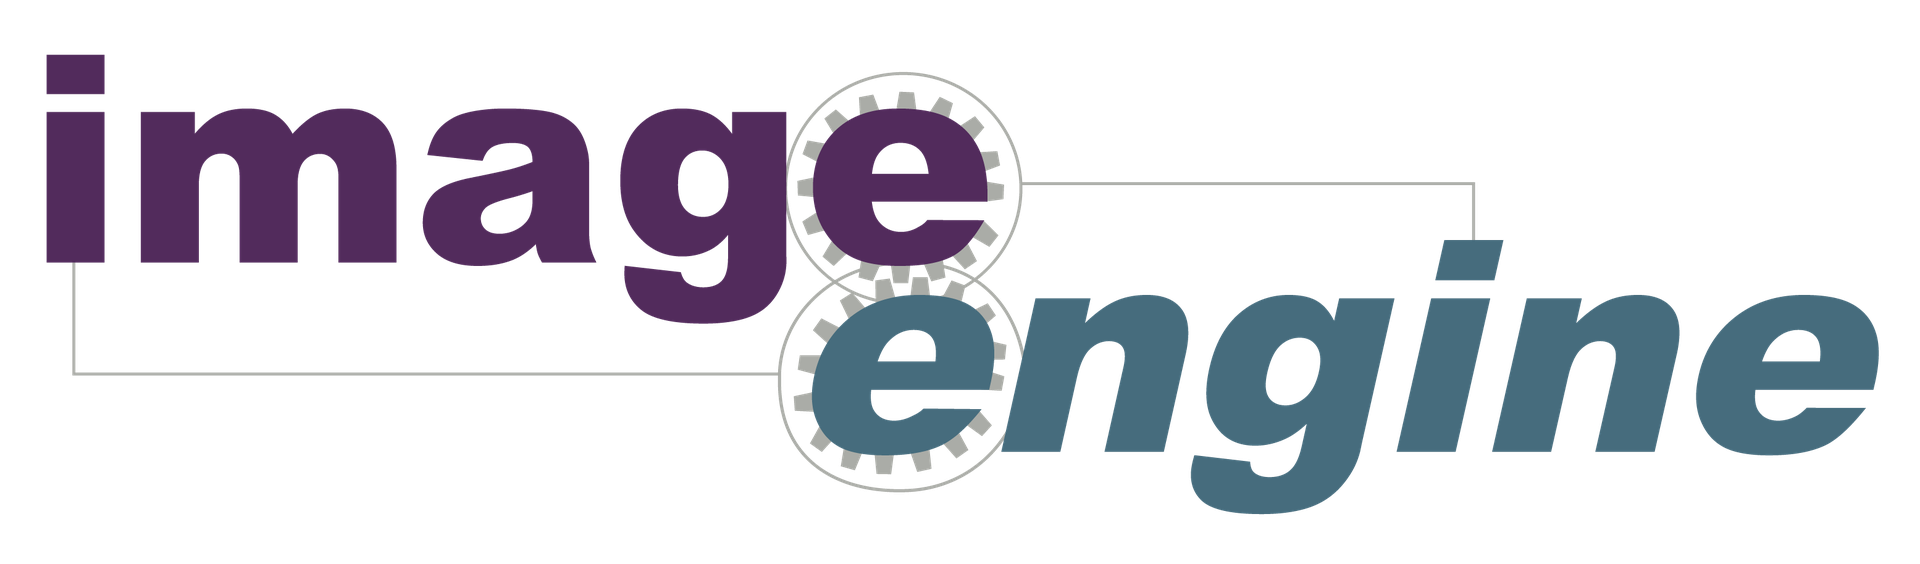 Image Engine logo